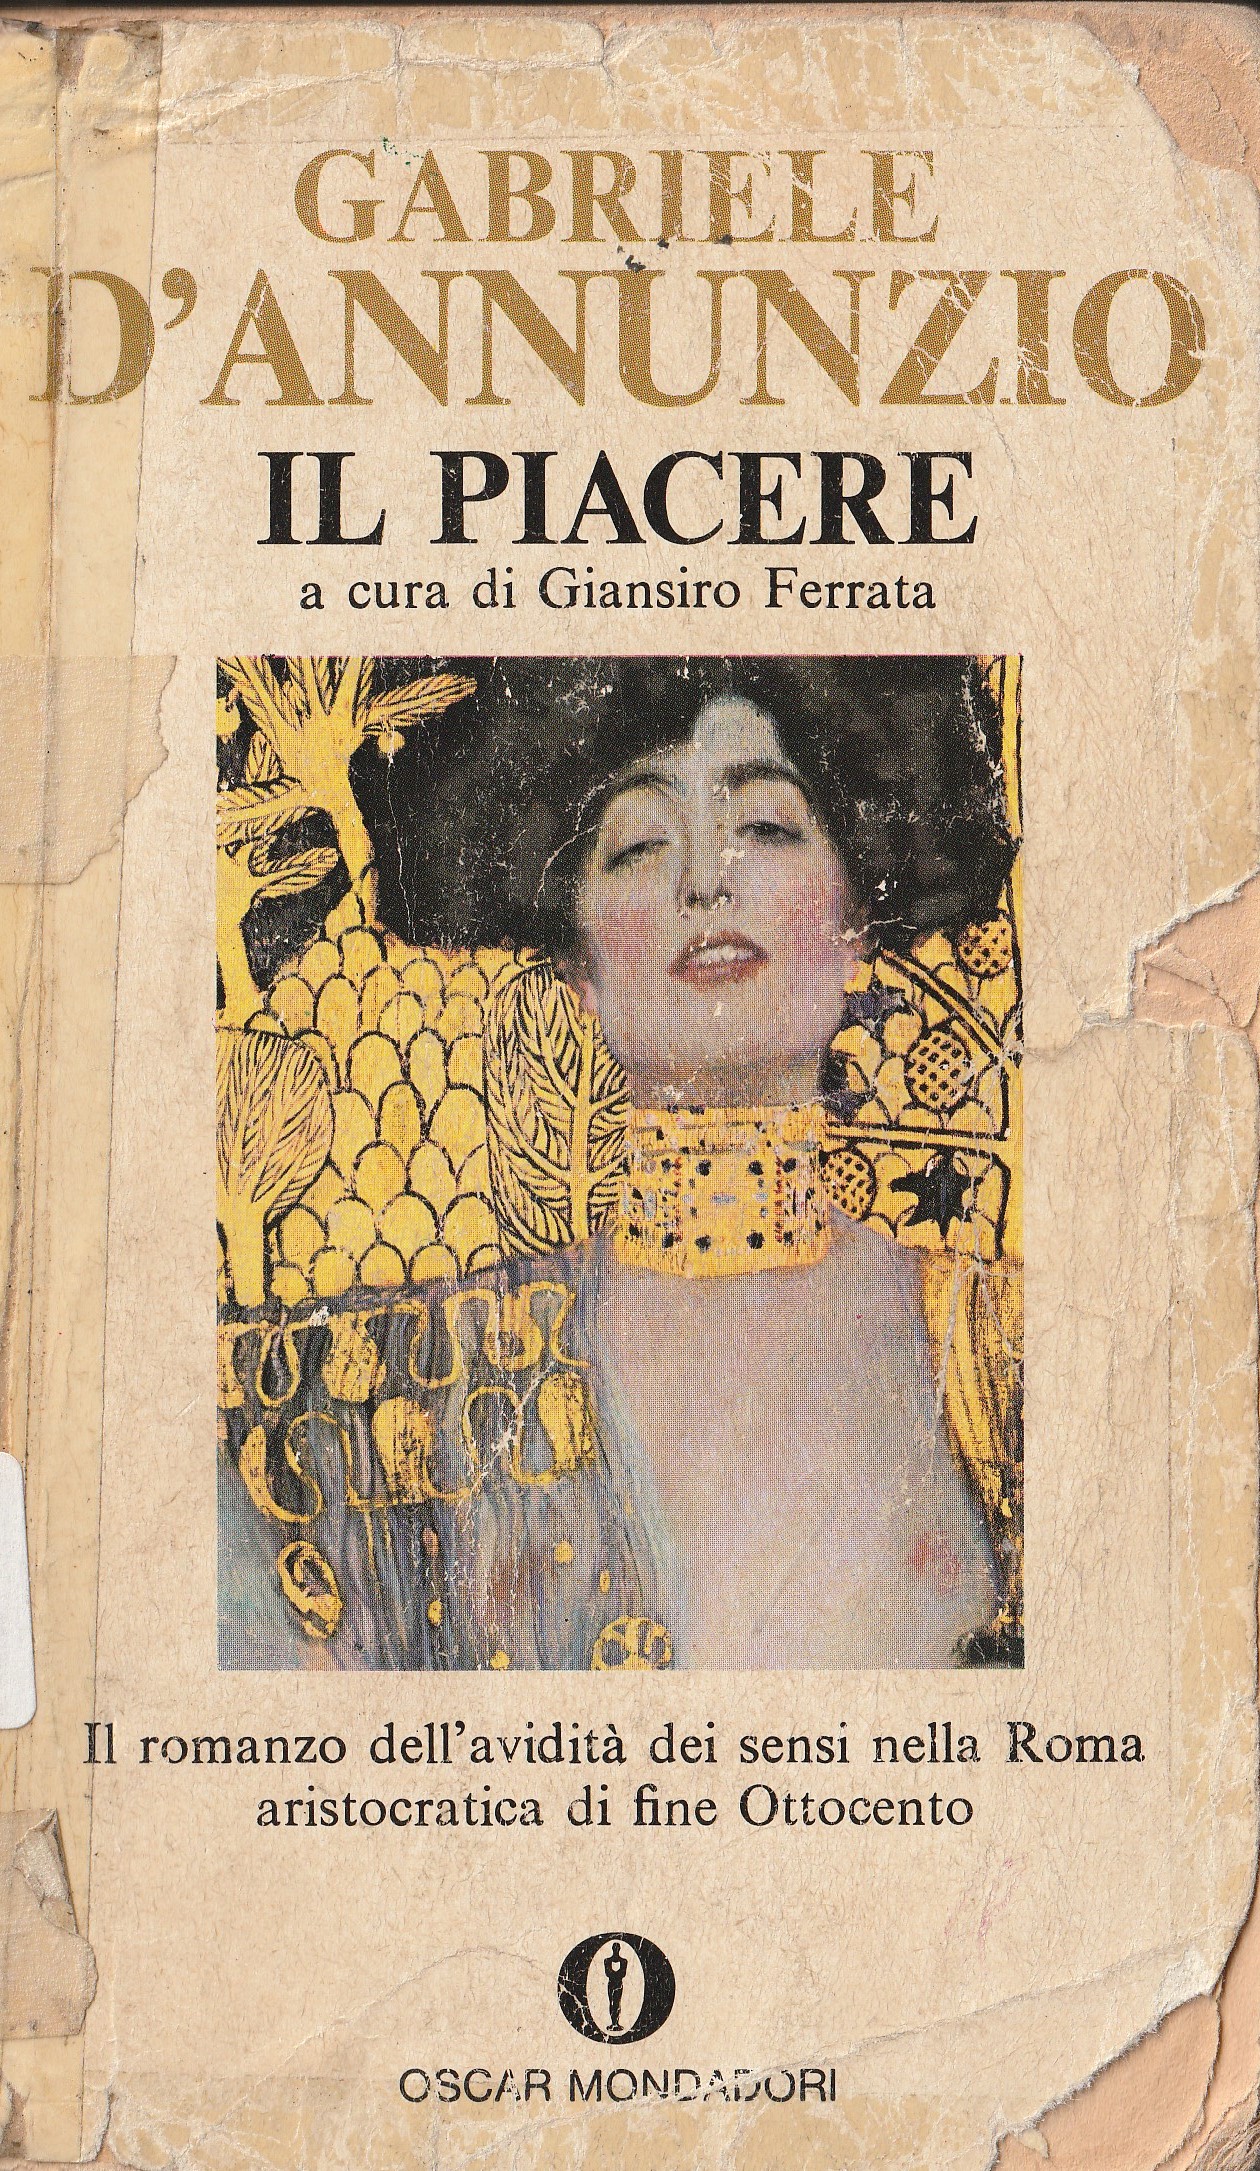 Gabriele D'Annunzio: IL PIACERE. A cura di Giansiro Ferrata. – Biblioteca Liceo Gullace Talotta